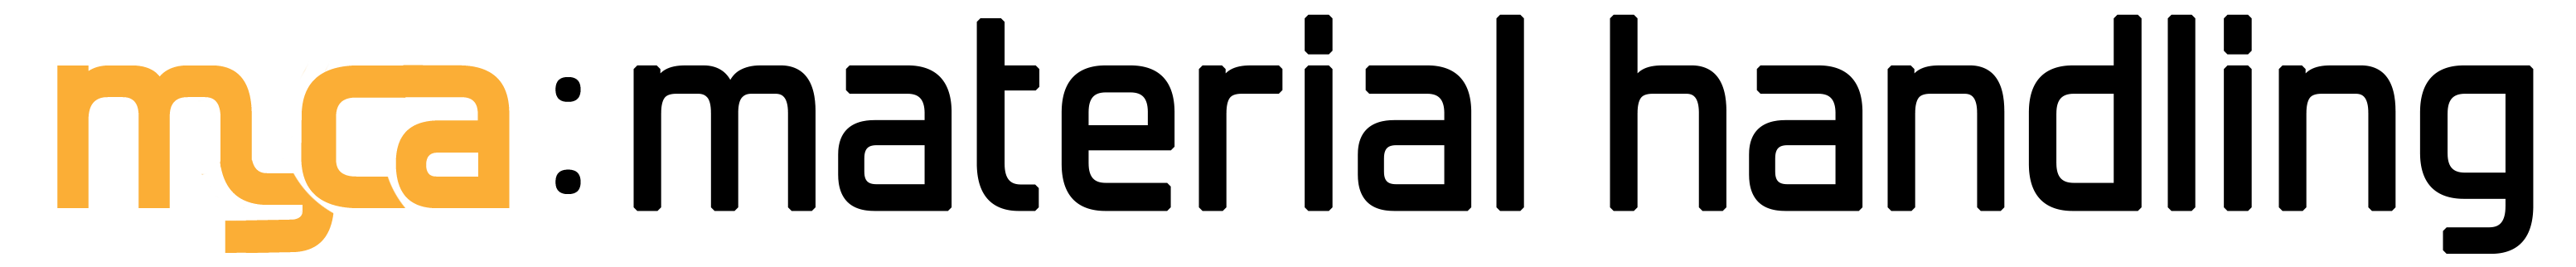 logo_handling_blackFont